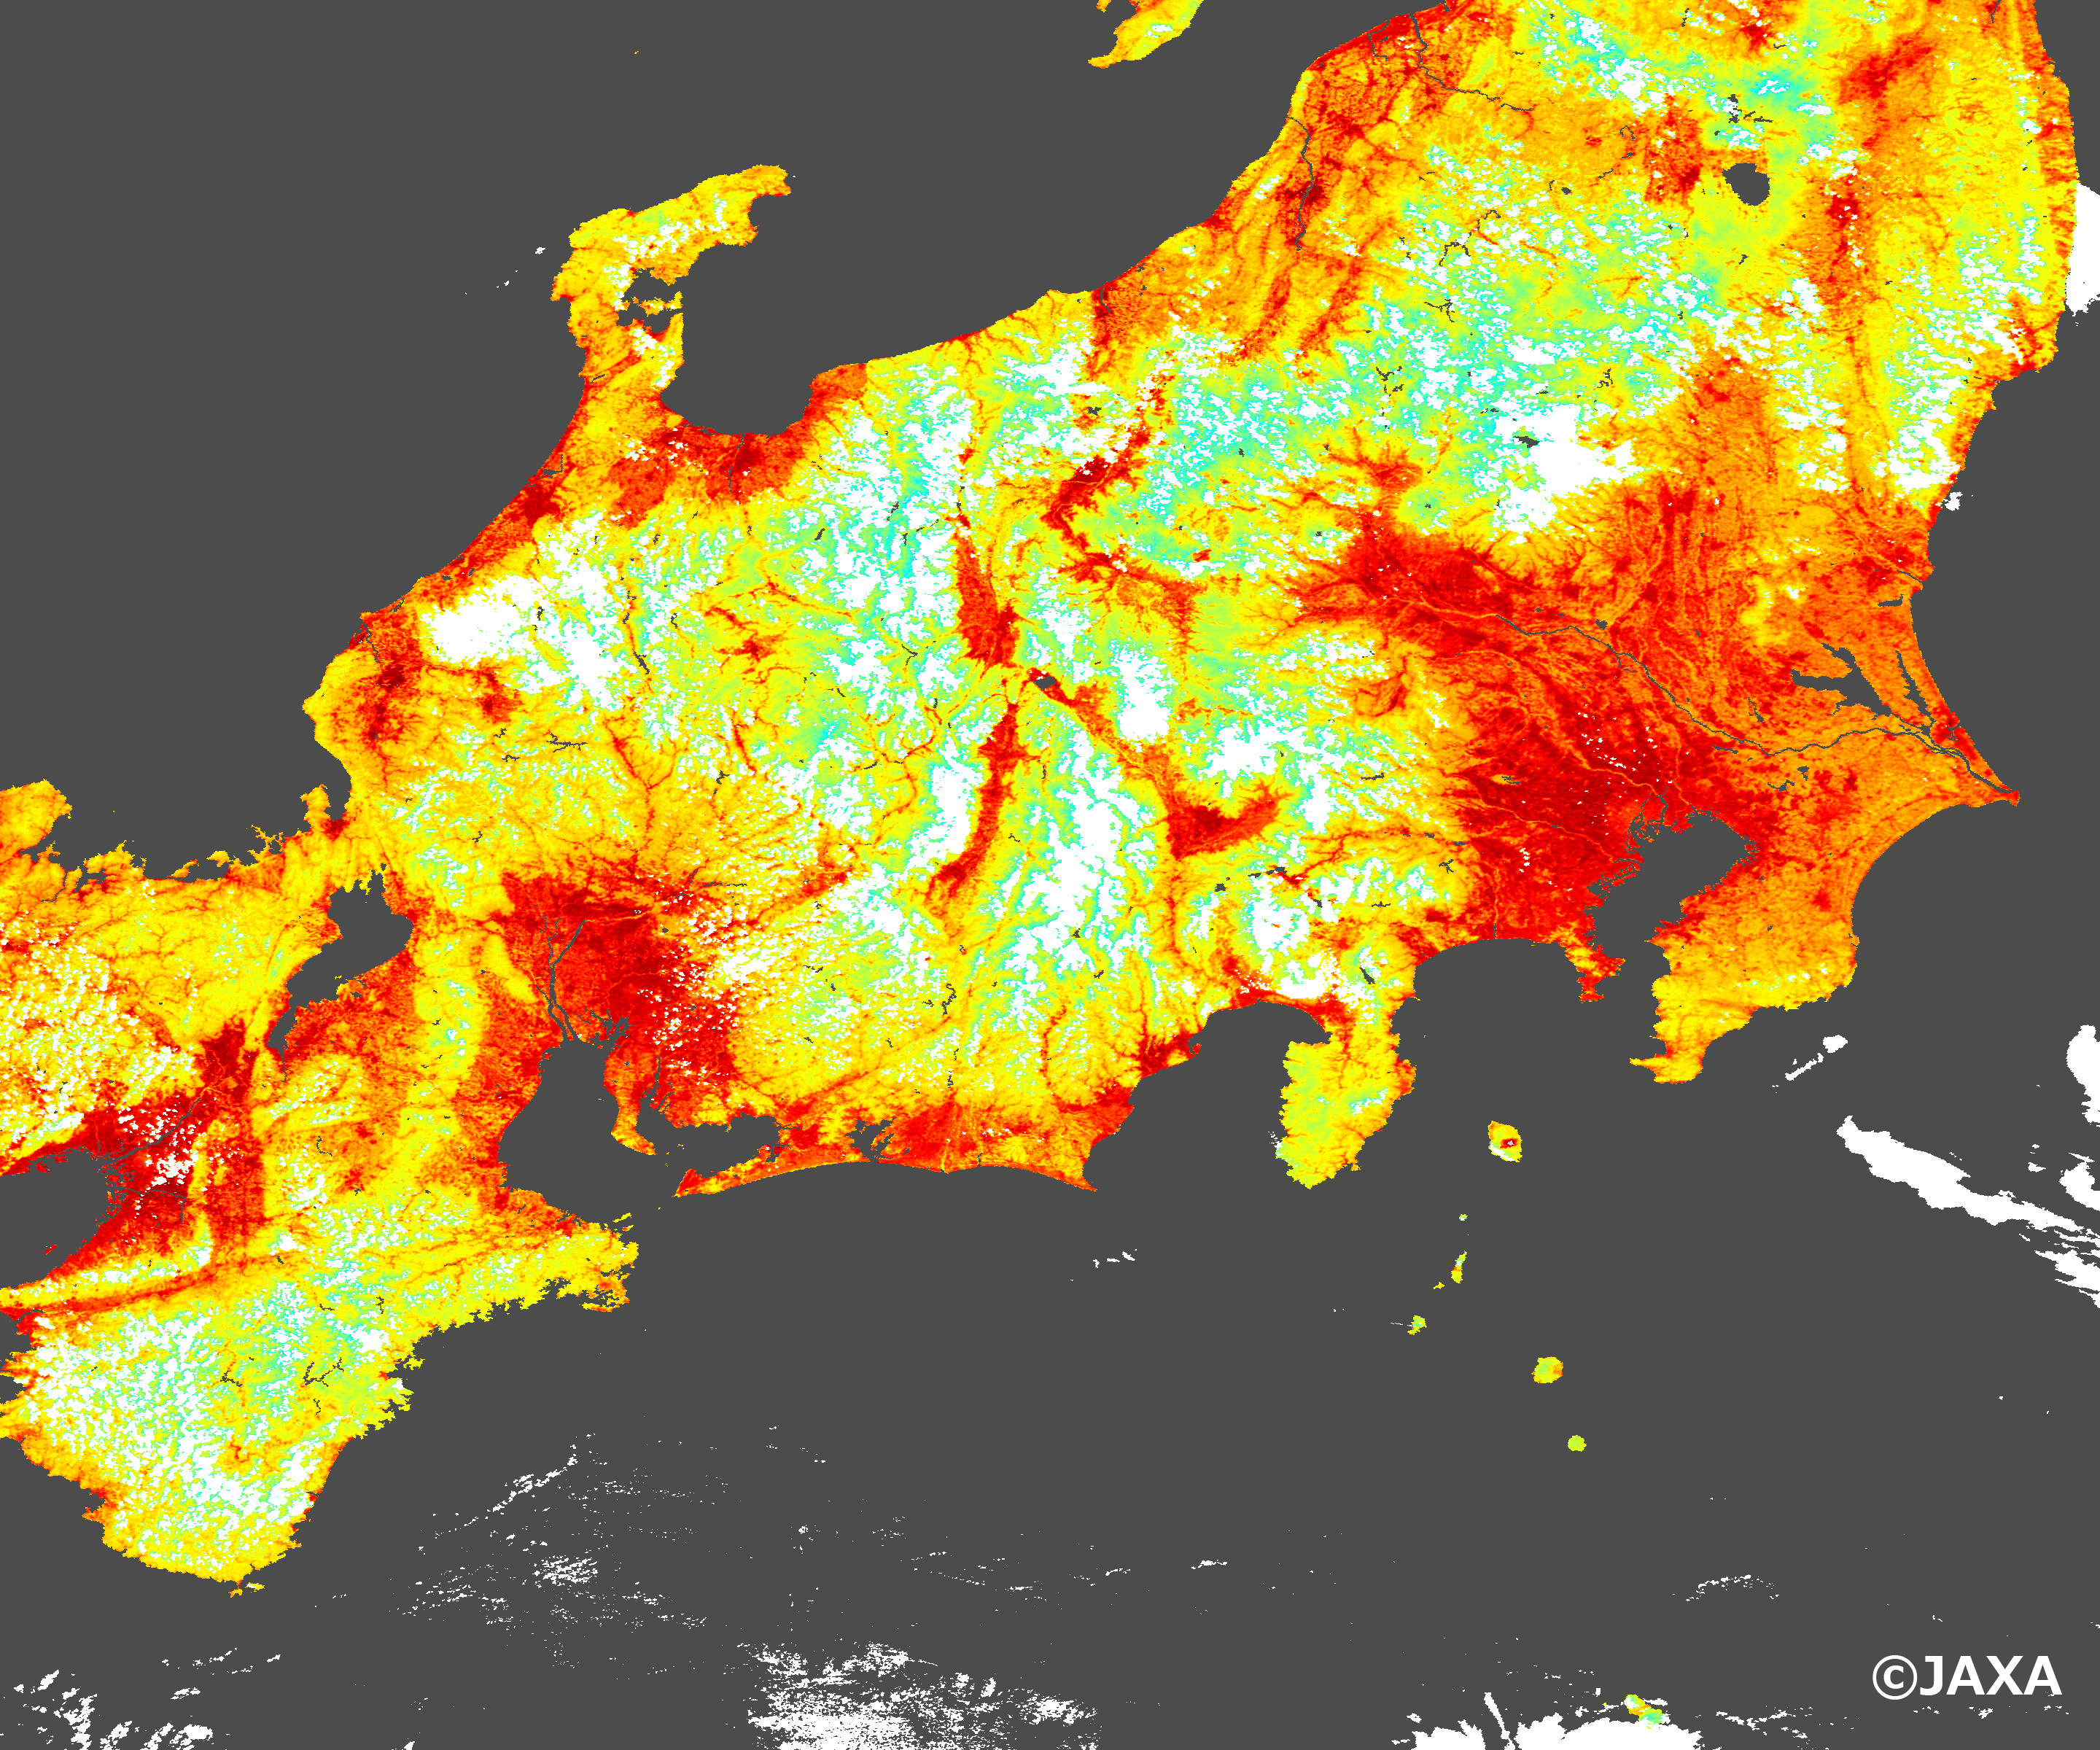 しきさい が捉えた日本の猛暑 8 1 地球が見える Jaxa 第一宇宙技術部門 地球観測研究センター Eorc